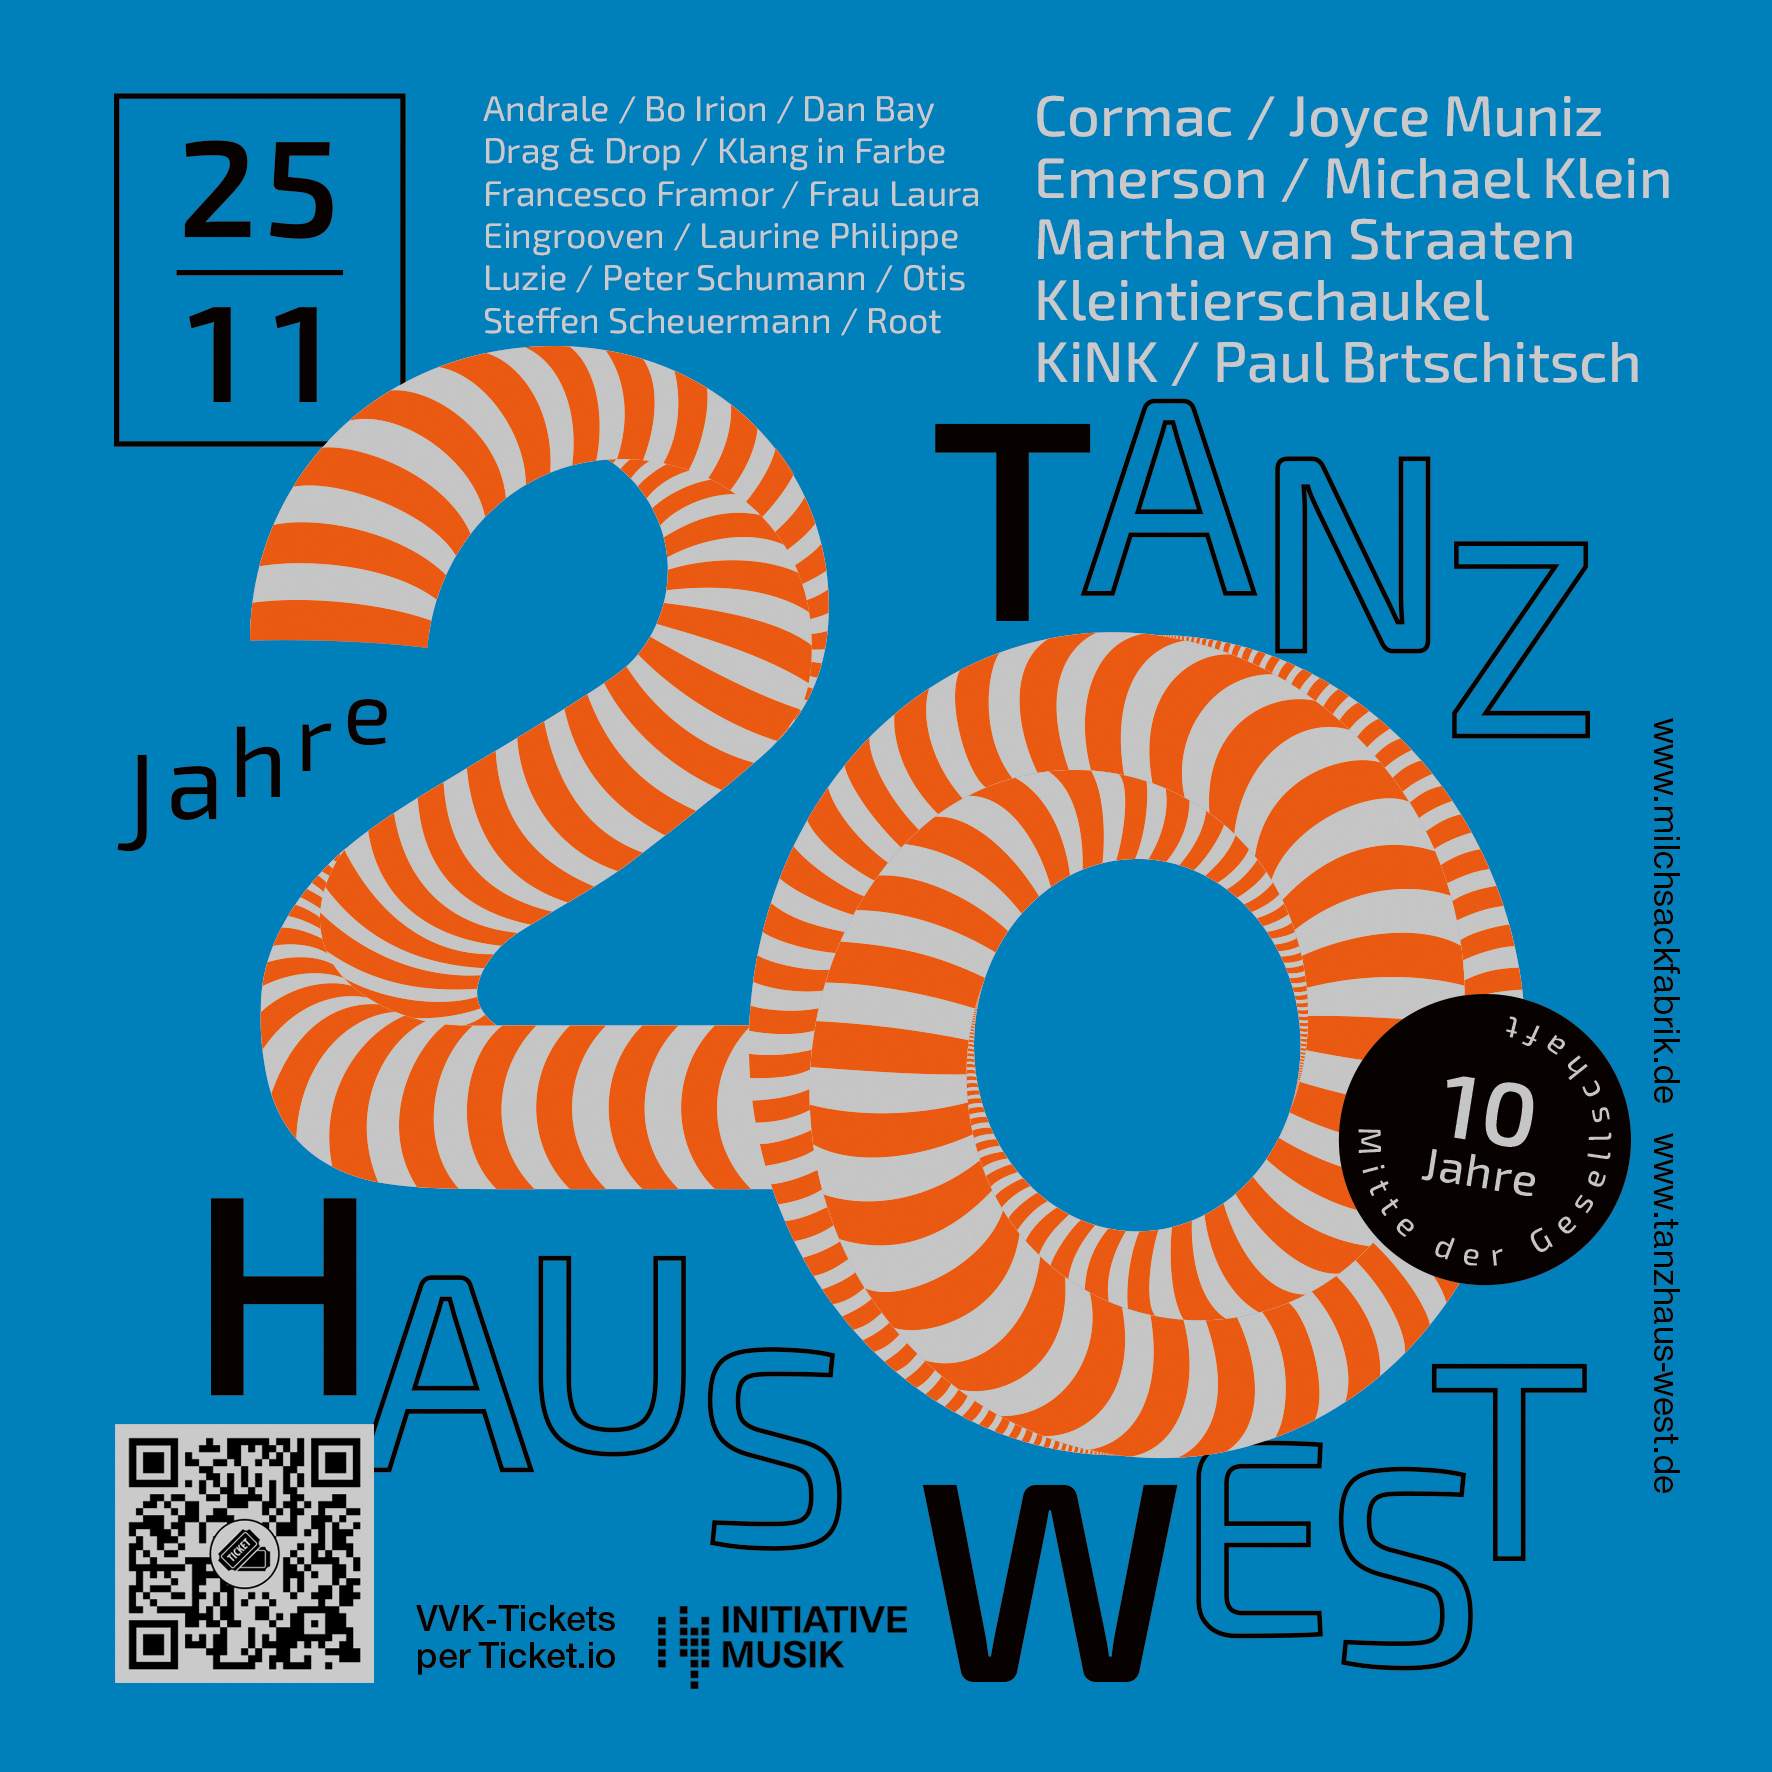 20 JAHRE Tanzhaus West - フライヤー表